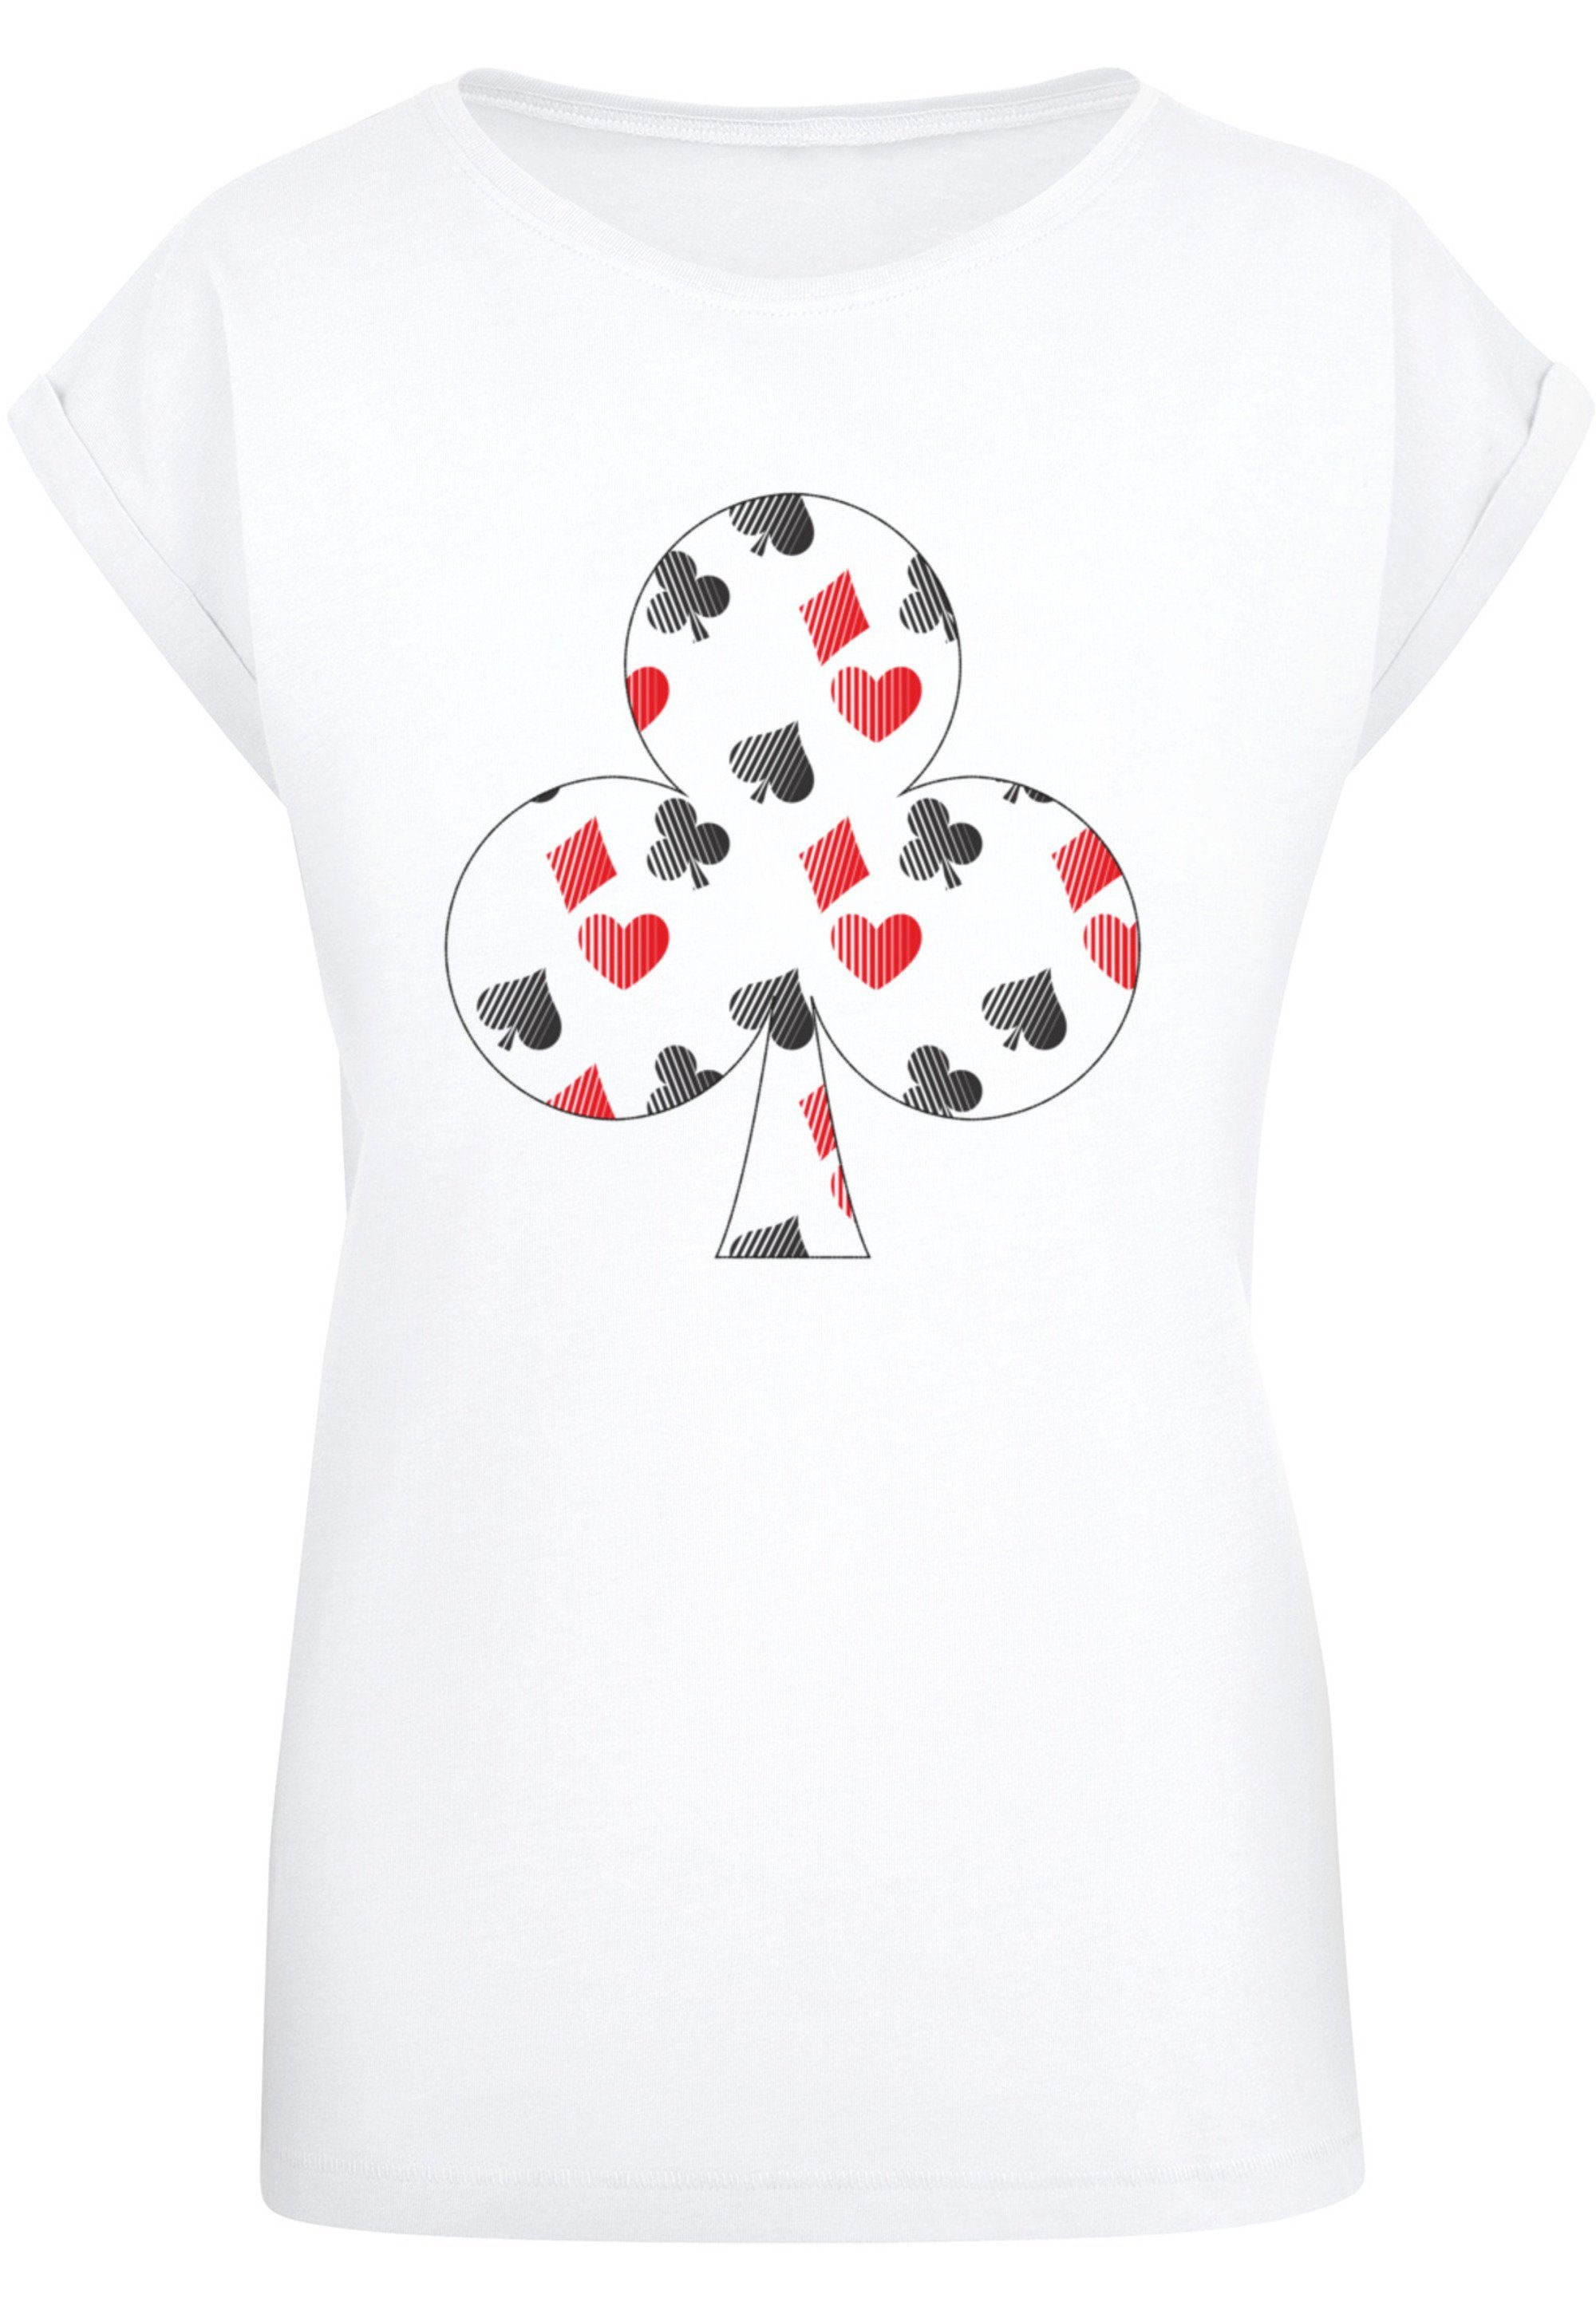 Größe Kreuz Karo Kartenspiel M cm und Das trägt Pik 170 groß F4NT4STIC T-Shirt Model Print, Herz ist Poker